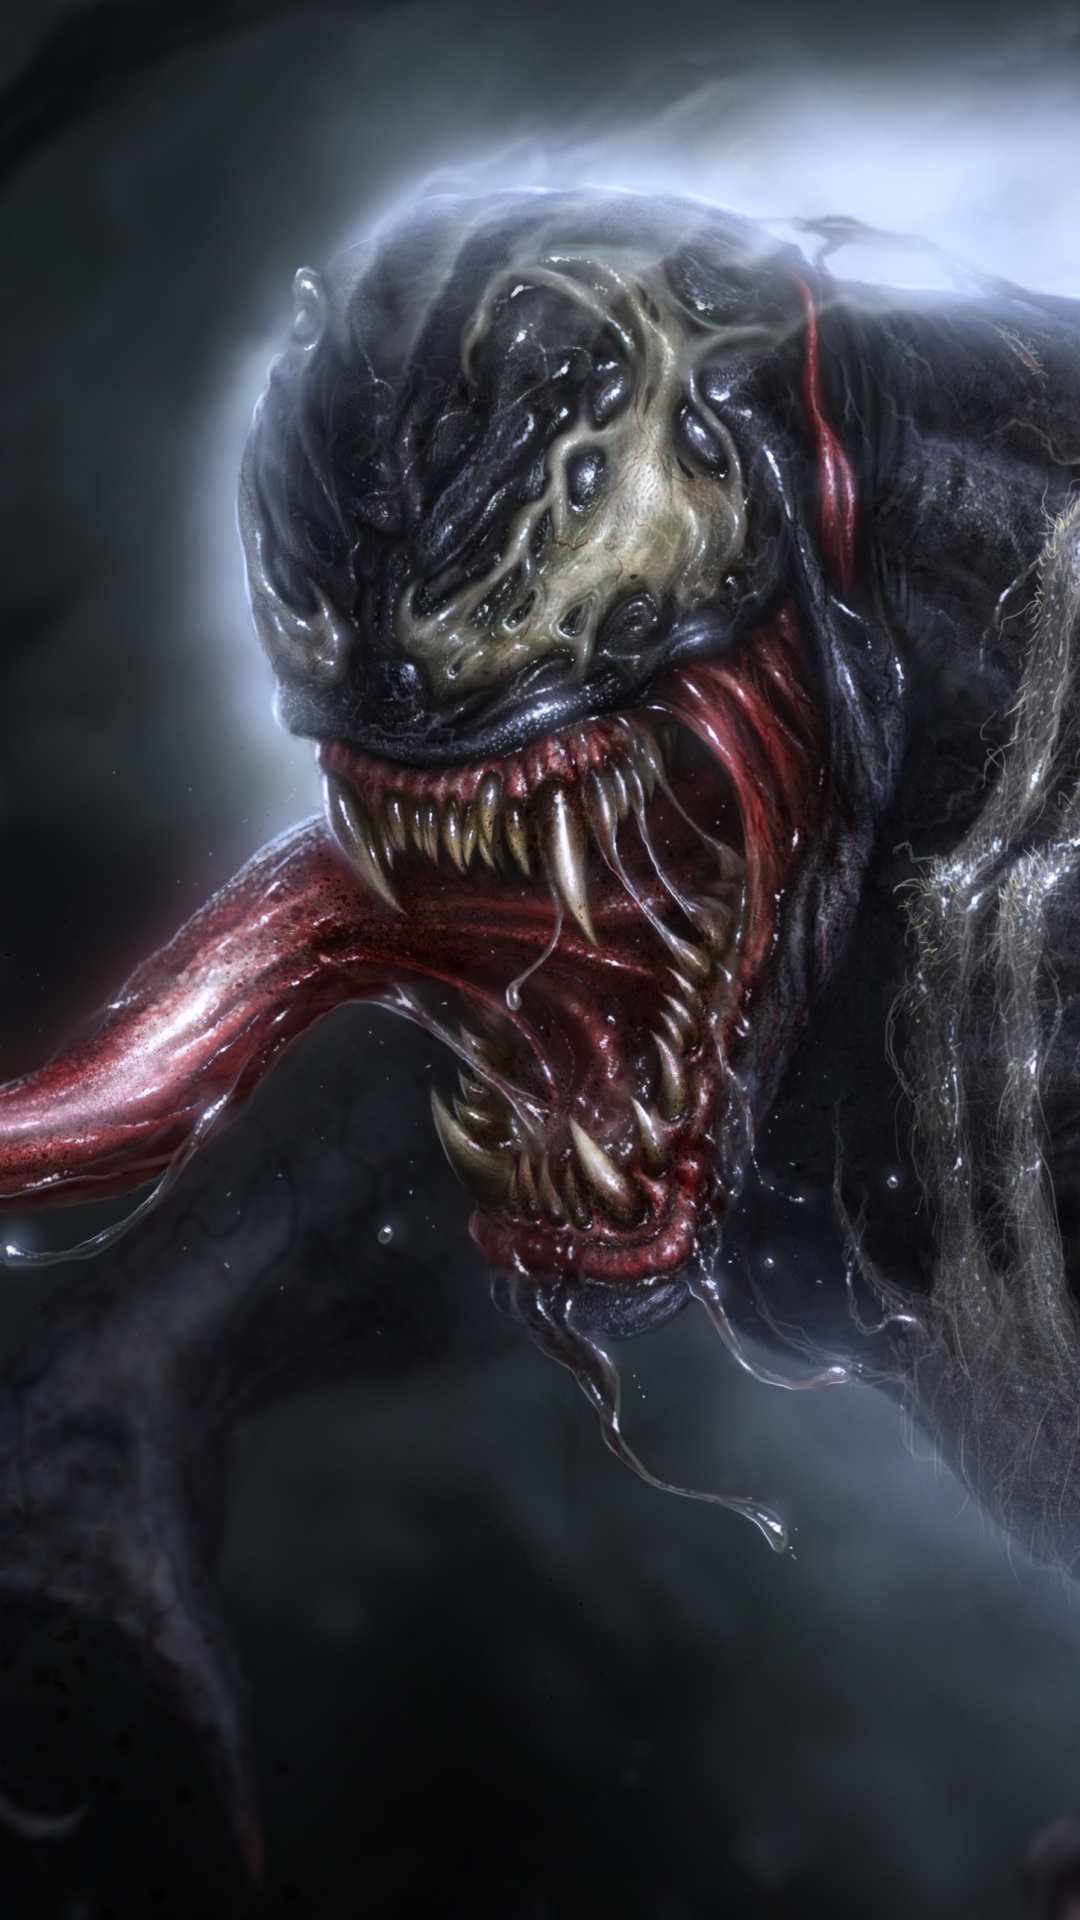 Ngắm fan art Venom theo phong cách kinh dị, đáng sợ nhưng cũng vô cùng đã  mắt